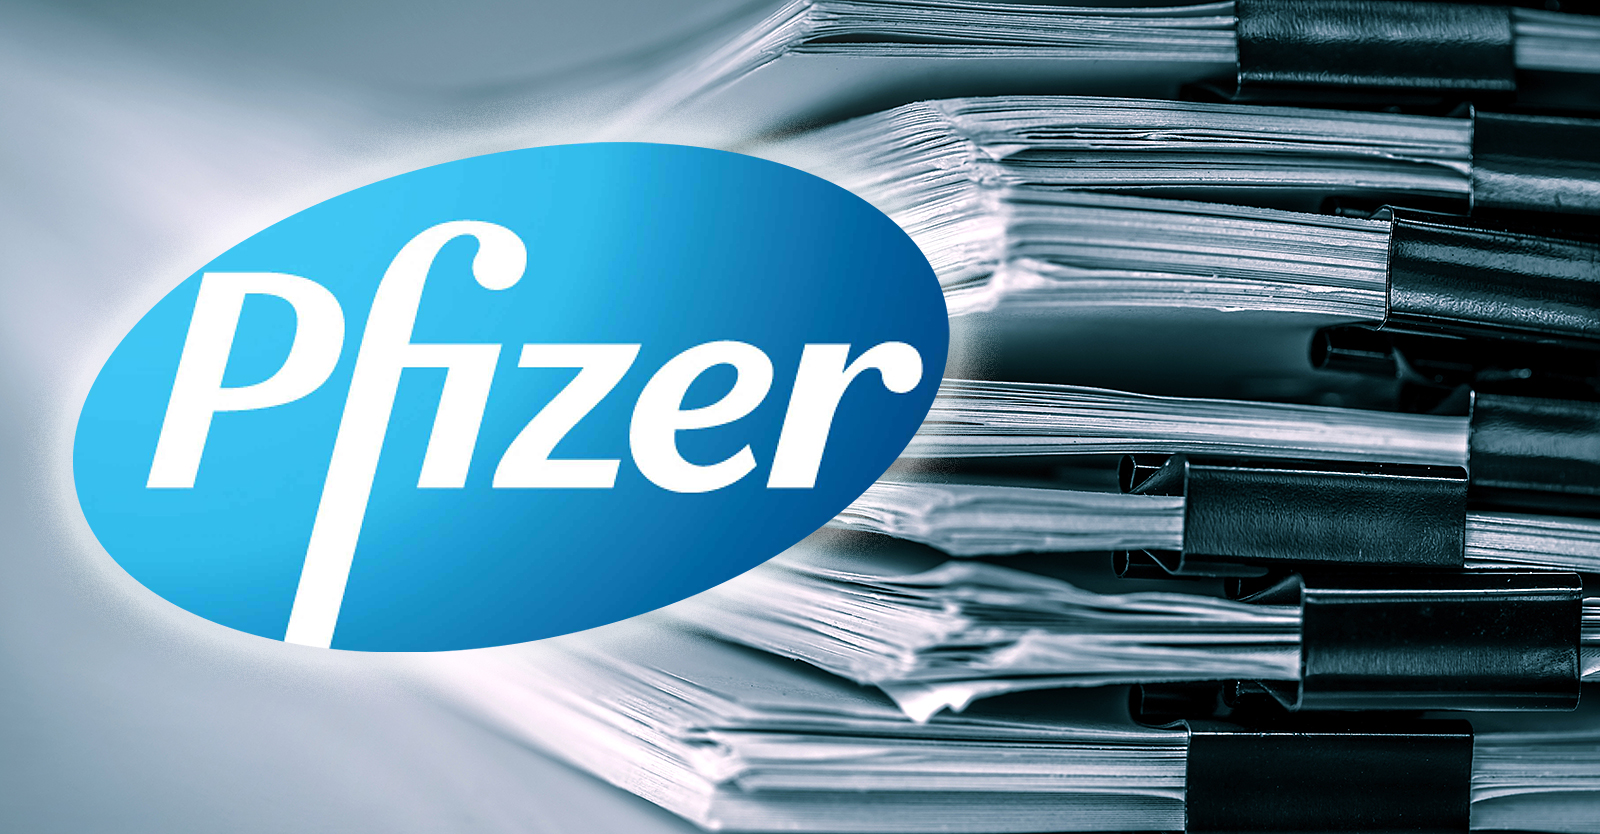 Des documents révèlent que Pfizer a embauché plus de 600 personnes pour traiter les rapports d’effets indésirables des vaccins